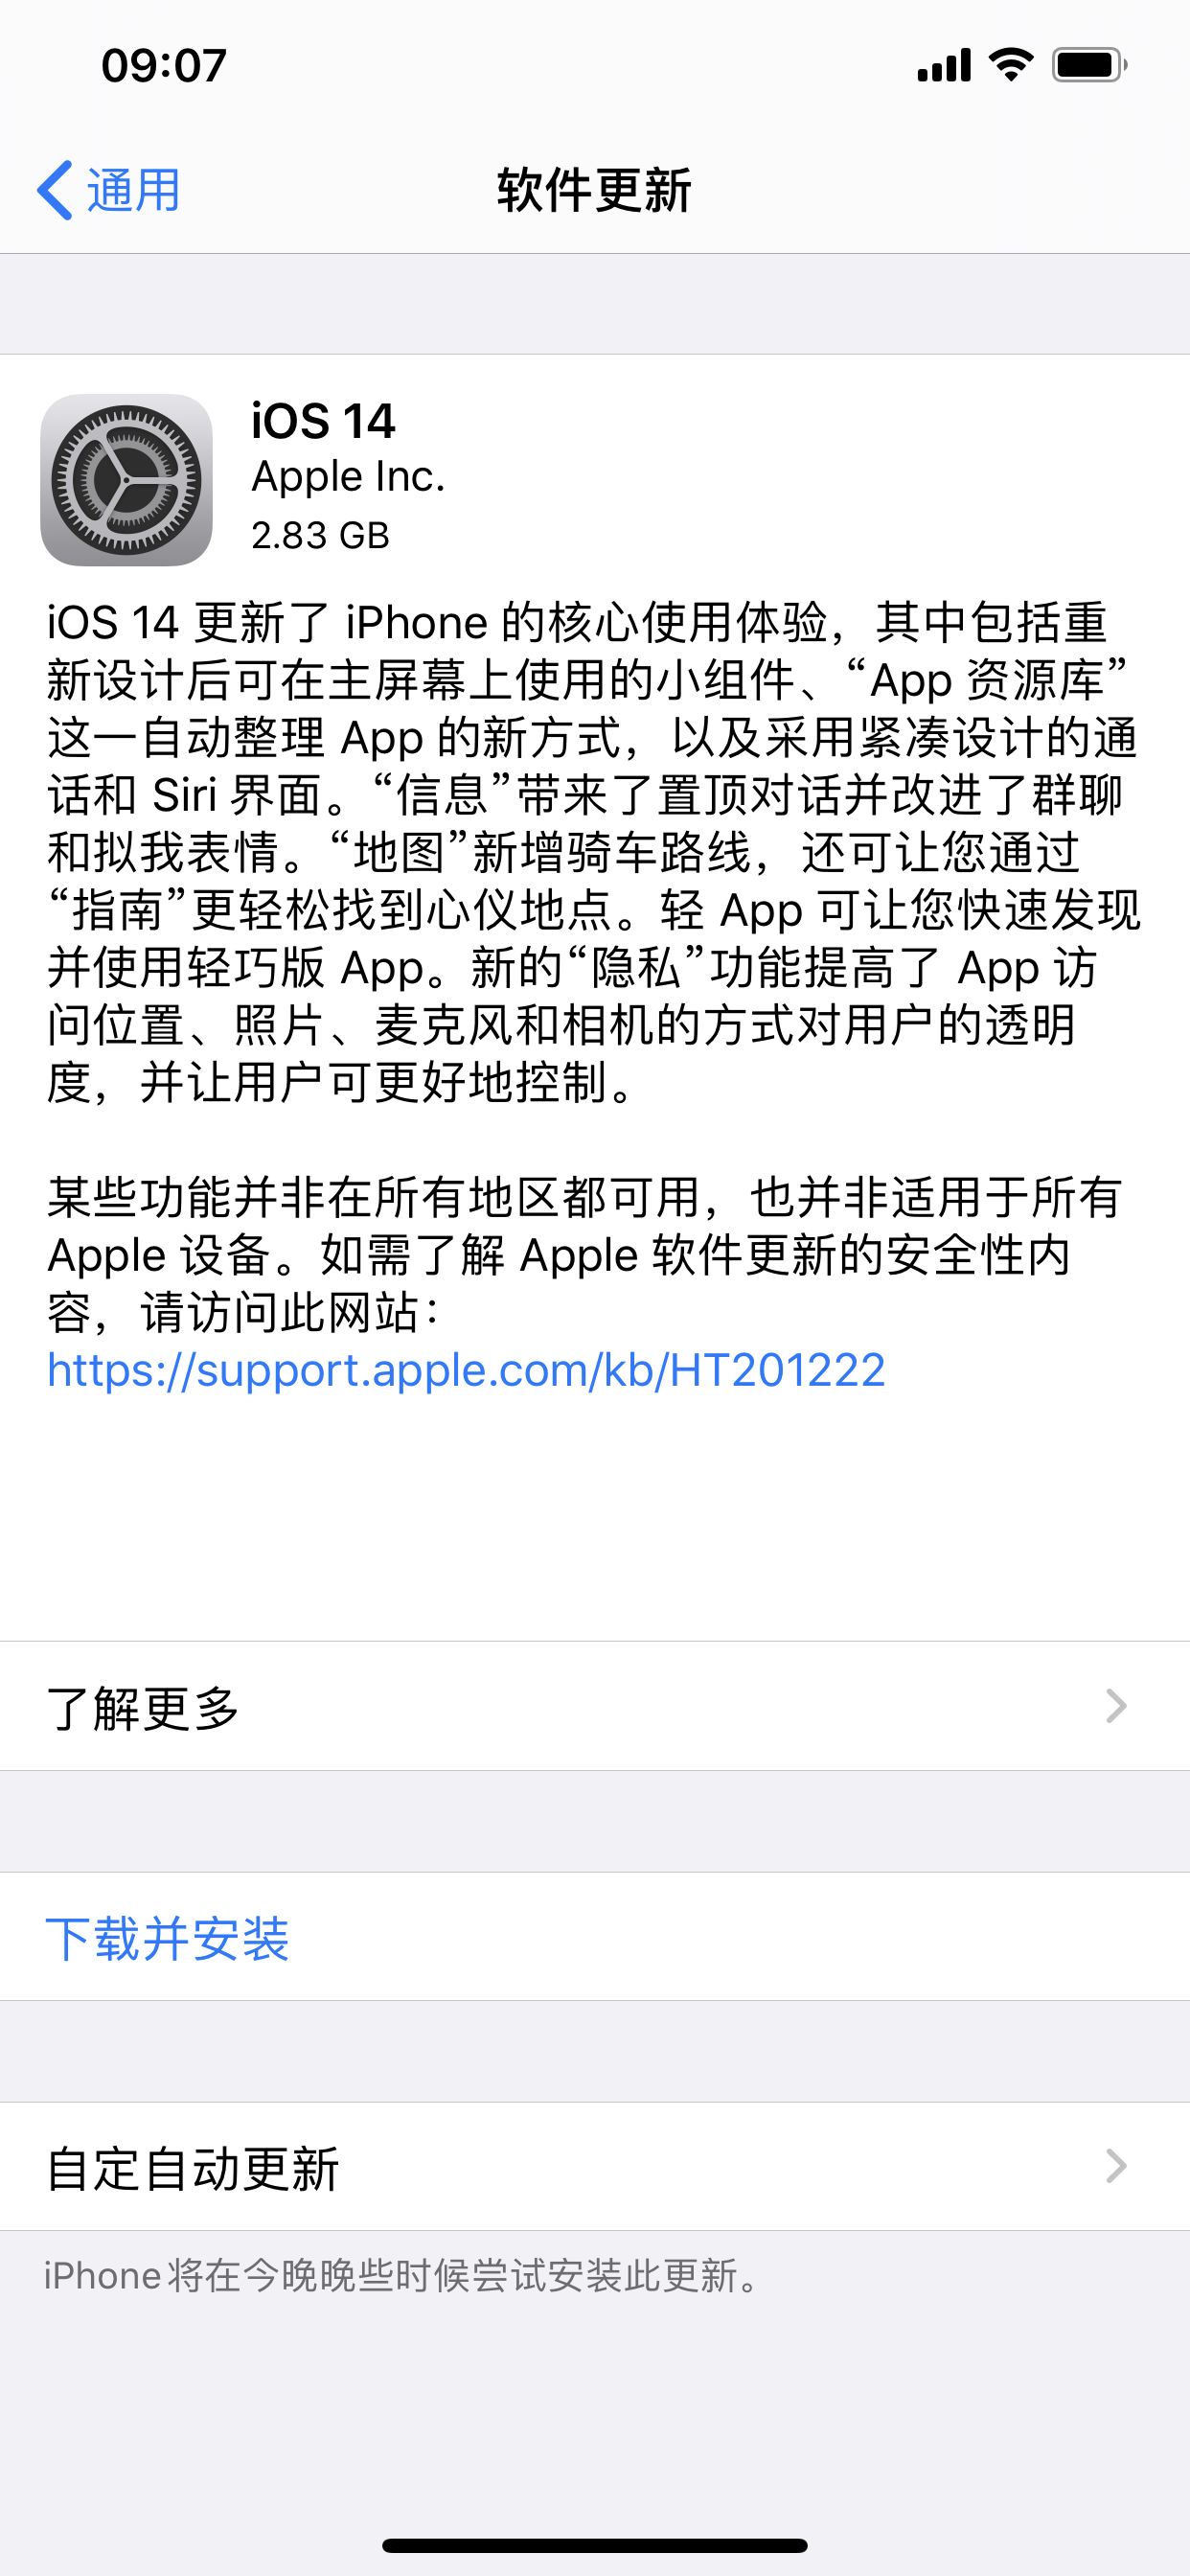 iOS 14正式版免费试用,评测